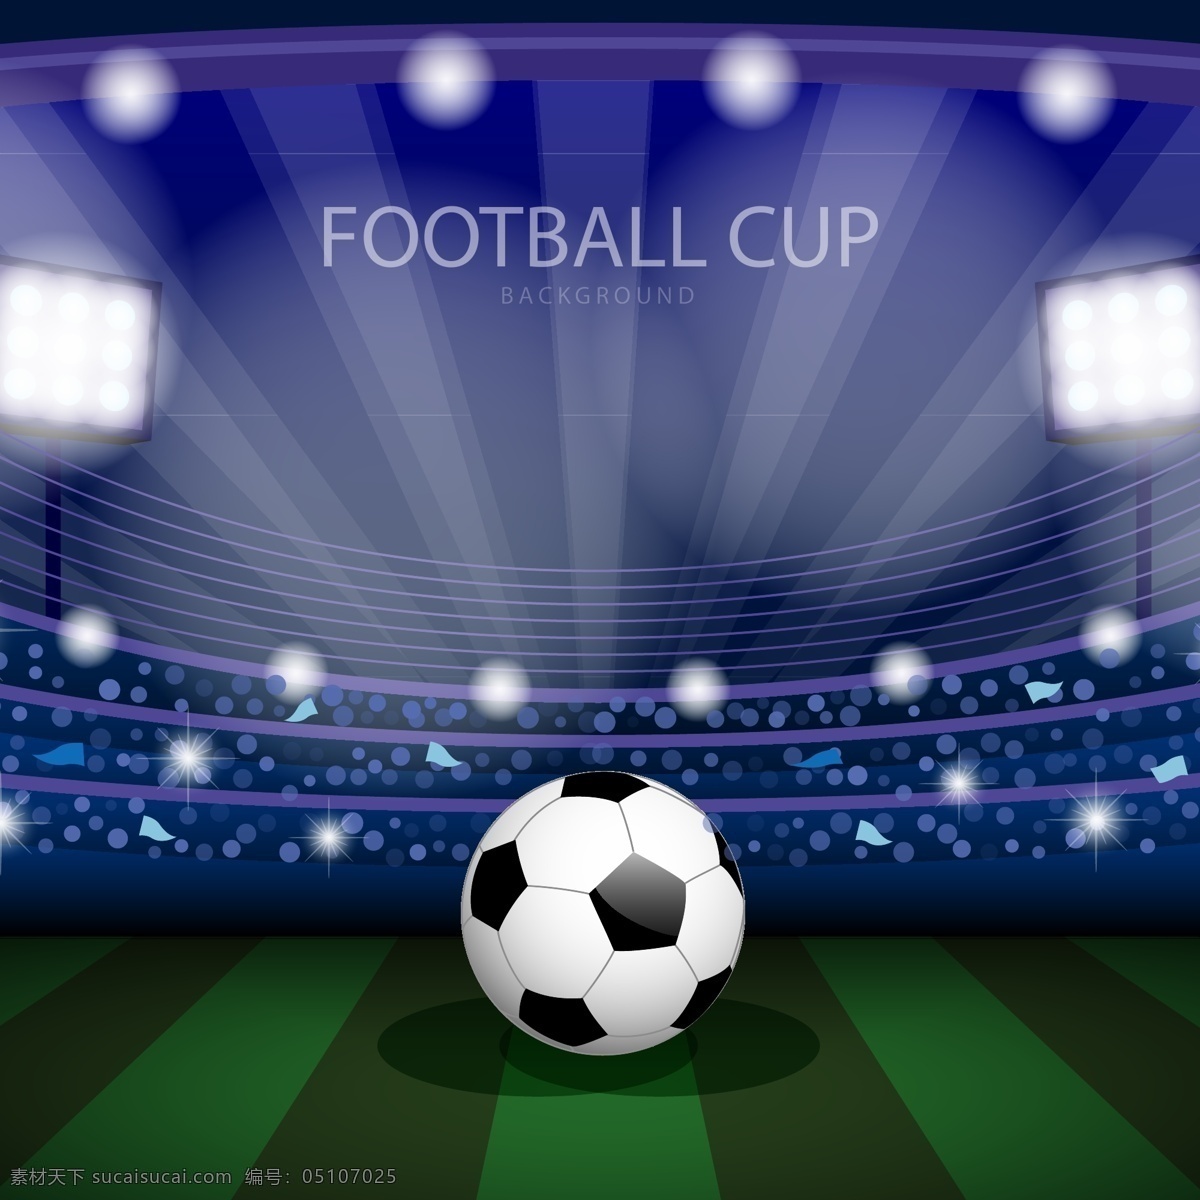 炫 蓝 背景 世界杯 足球 元素 足球比赛 体育 足球运动 体育项目 足球元素 足球设计 体育设计 体育比赛 炫蓝背景设计